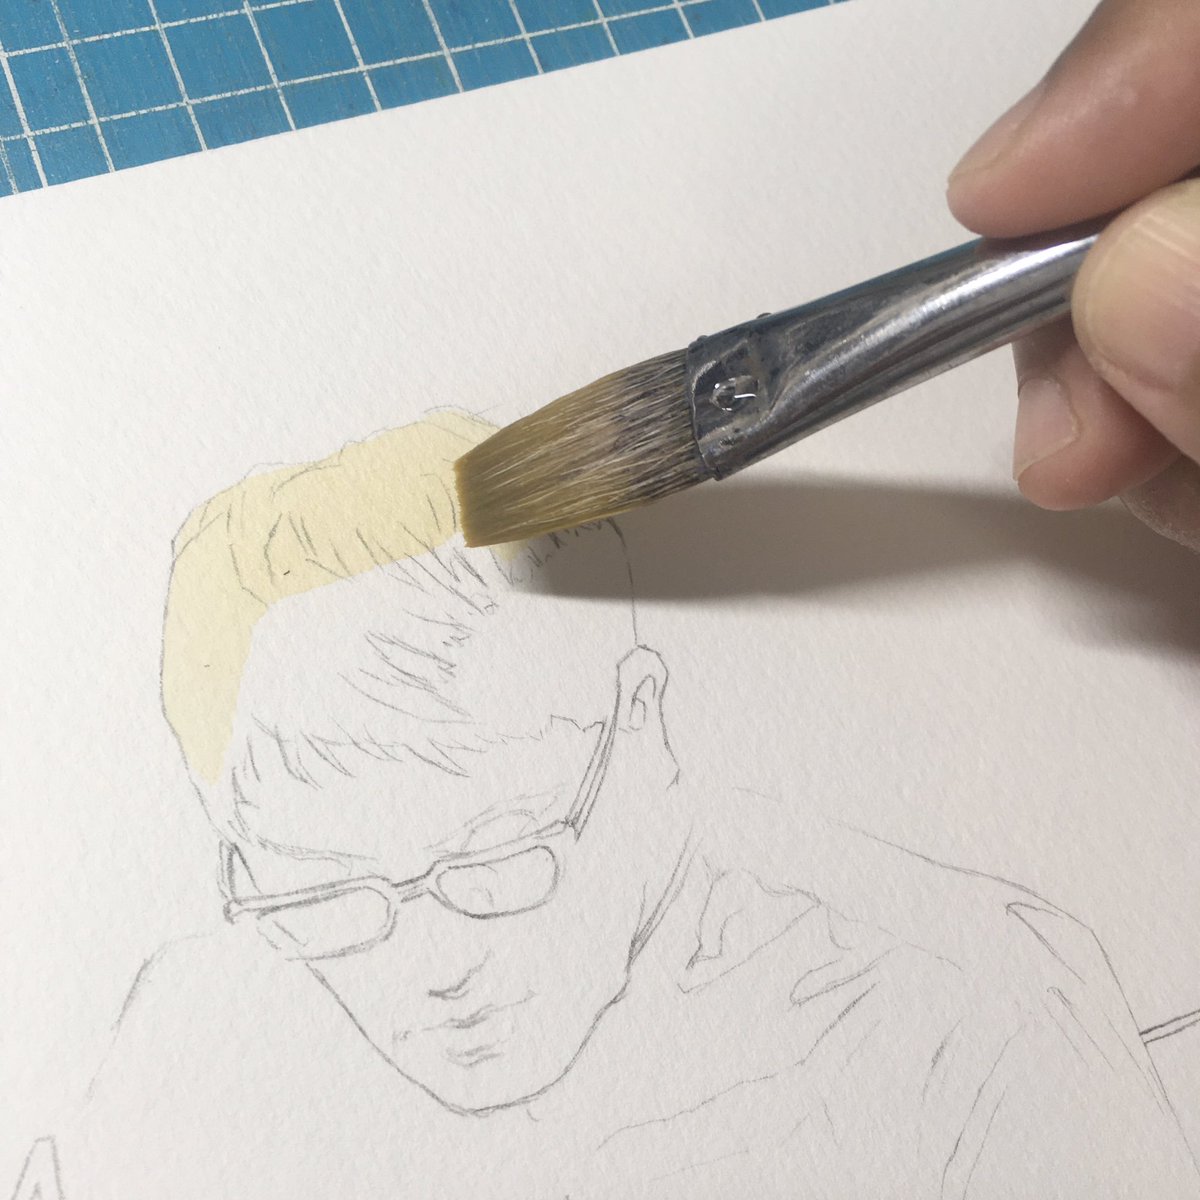 描き始めました。ツリーで投稿続けます。

・シャーペンで下書き。ホワイト・ワトソン紙の超厚口(300g)。
・既に素敵絵が出ているので、違うアングルを選ぶ。
・下にマステ。
・黄色にパレットに出ている色を適当に混ぜて少し濁らせた色をベースとして塗ってみた。 